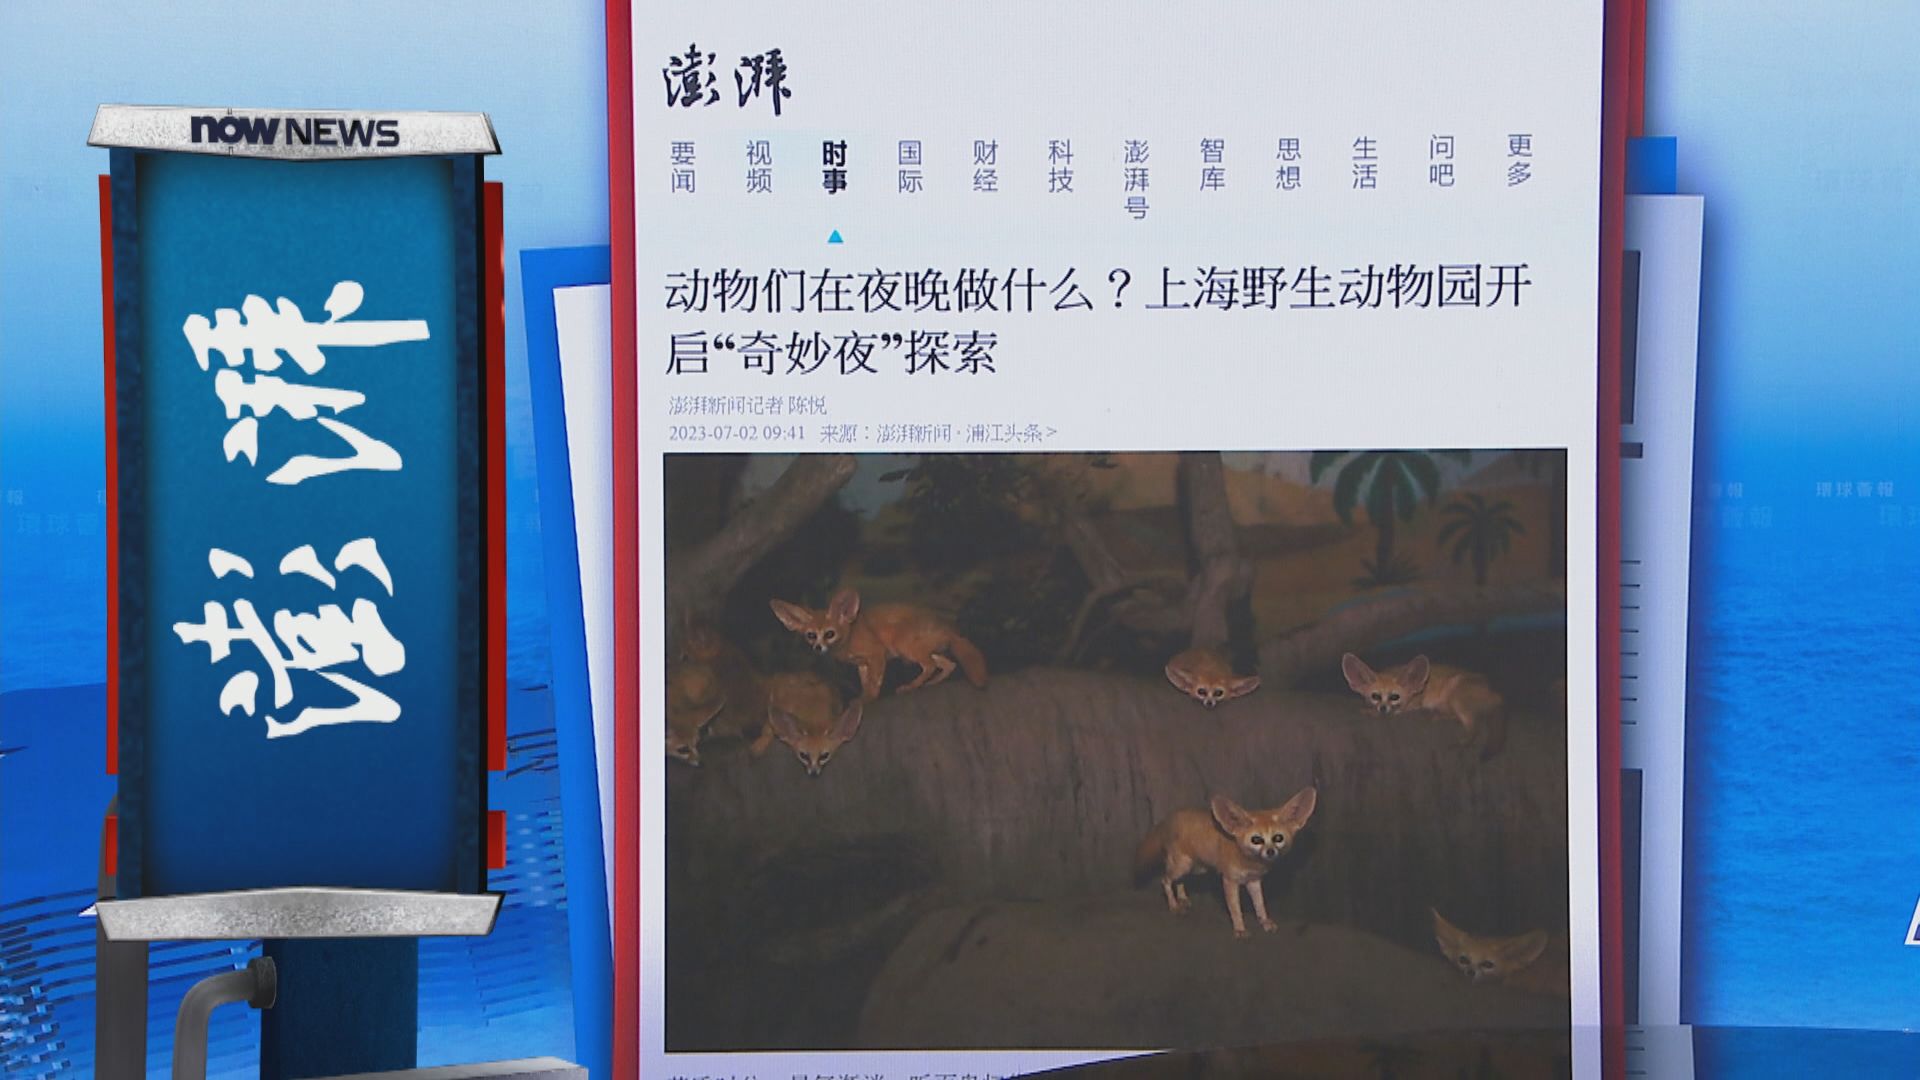 【環球薈報】上海野生動物園再辦「奇妙夜」